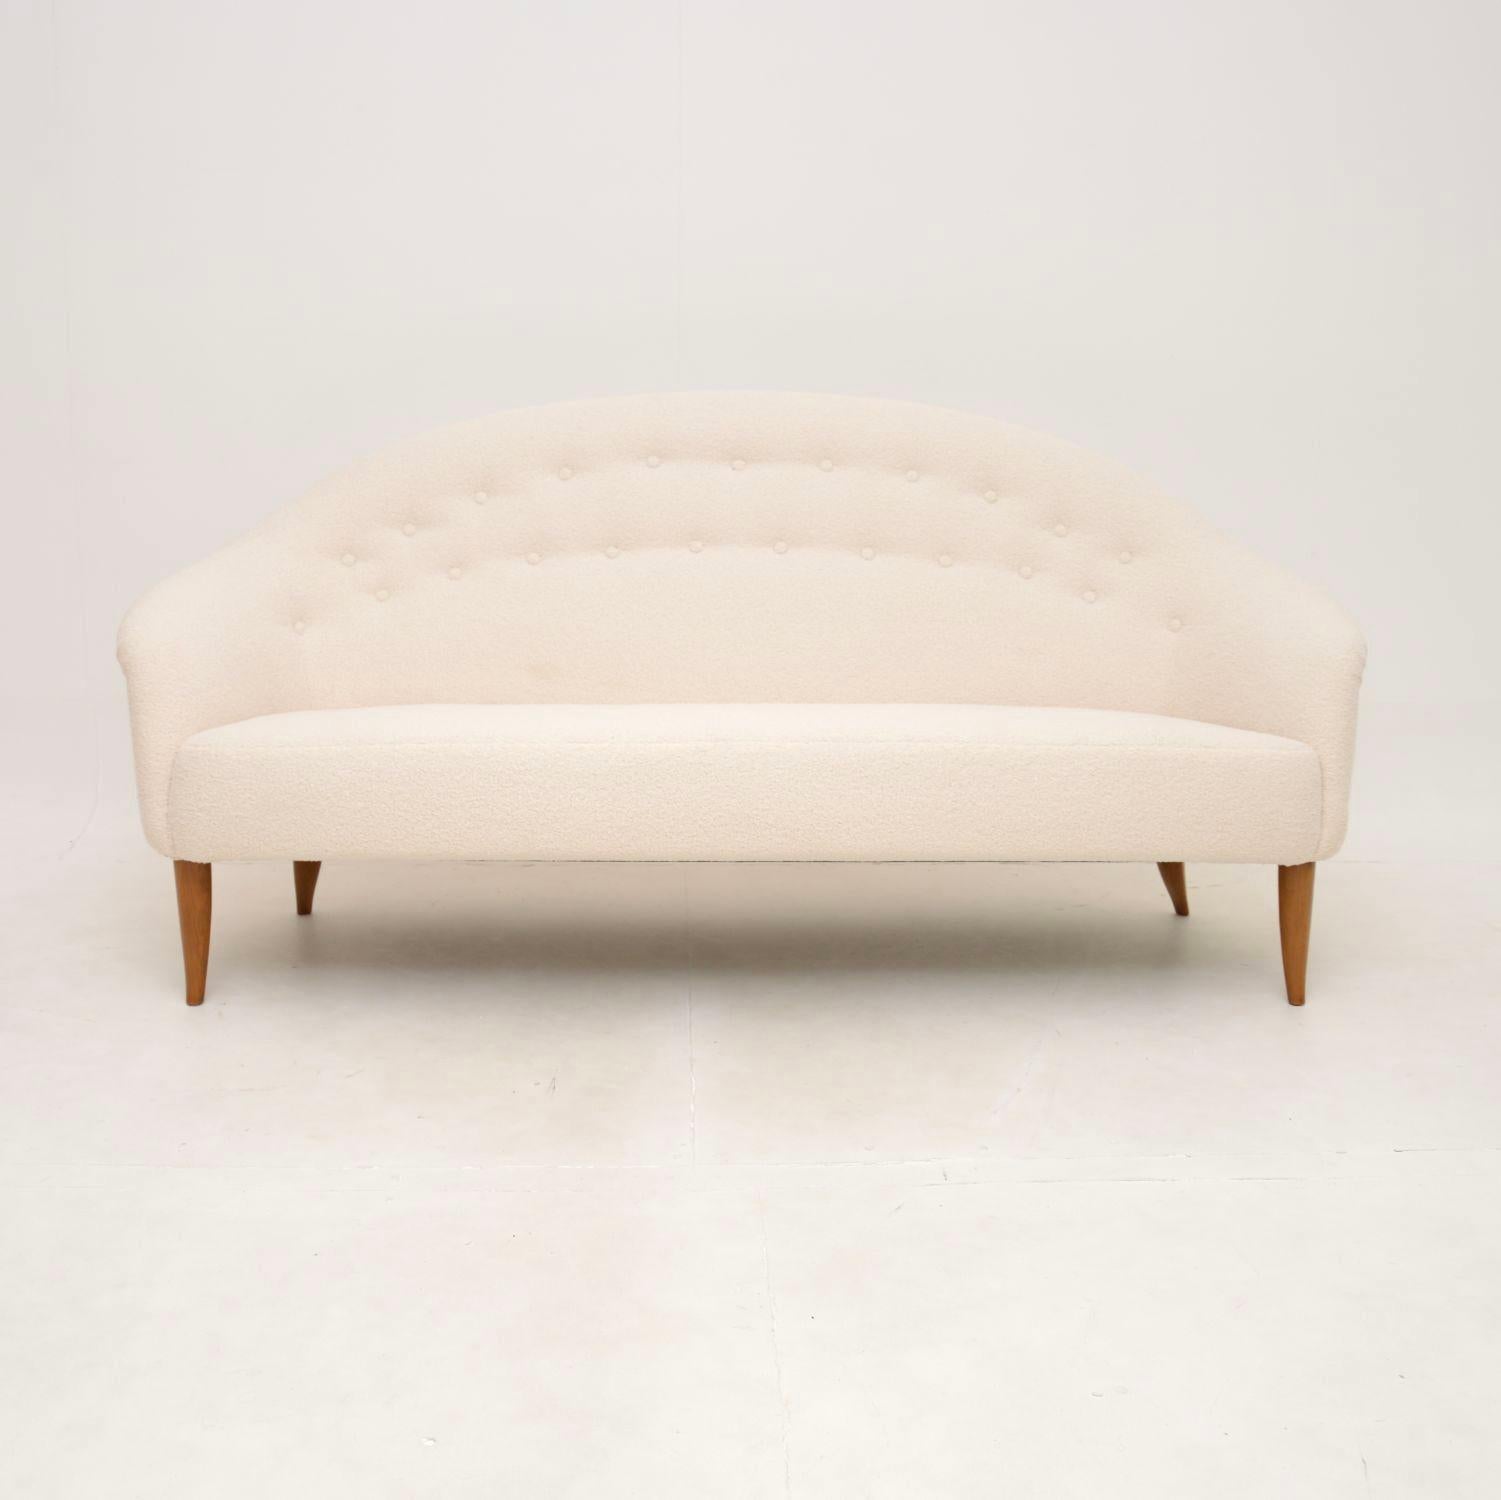 Ein schönes und ikonisches Vintage-Sofa 'Paradiset' von Kerstin Horlin Holmquist. Es wurde in Schweden hergestellt und stammt aus den 1960er Jahren.

Es hat ein atemberaubendes Design und ist von erstaunlicher Qualität. Das ist nicht nur sehr